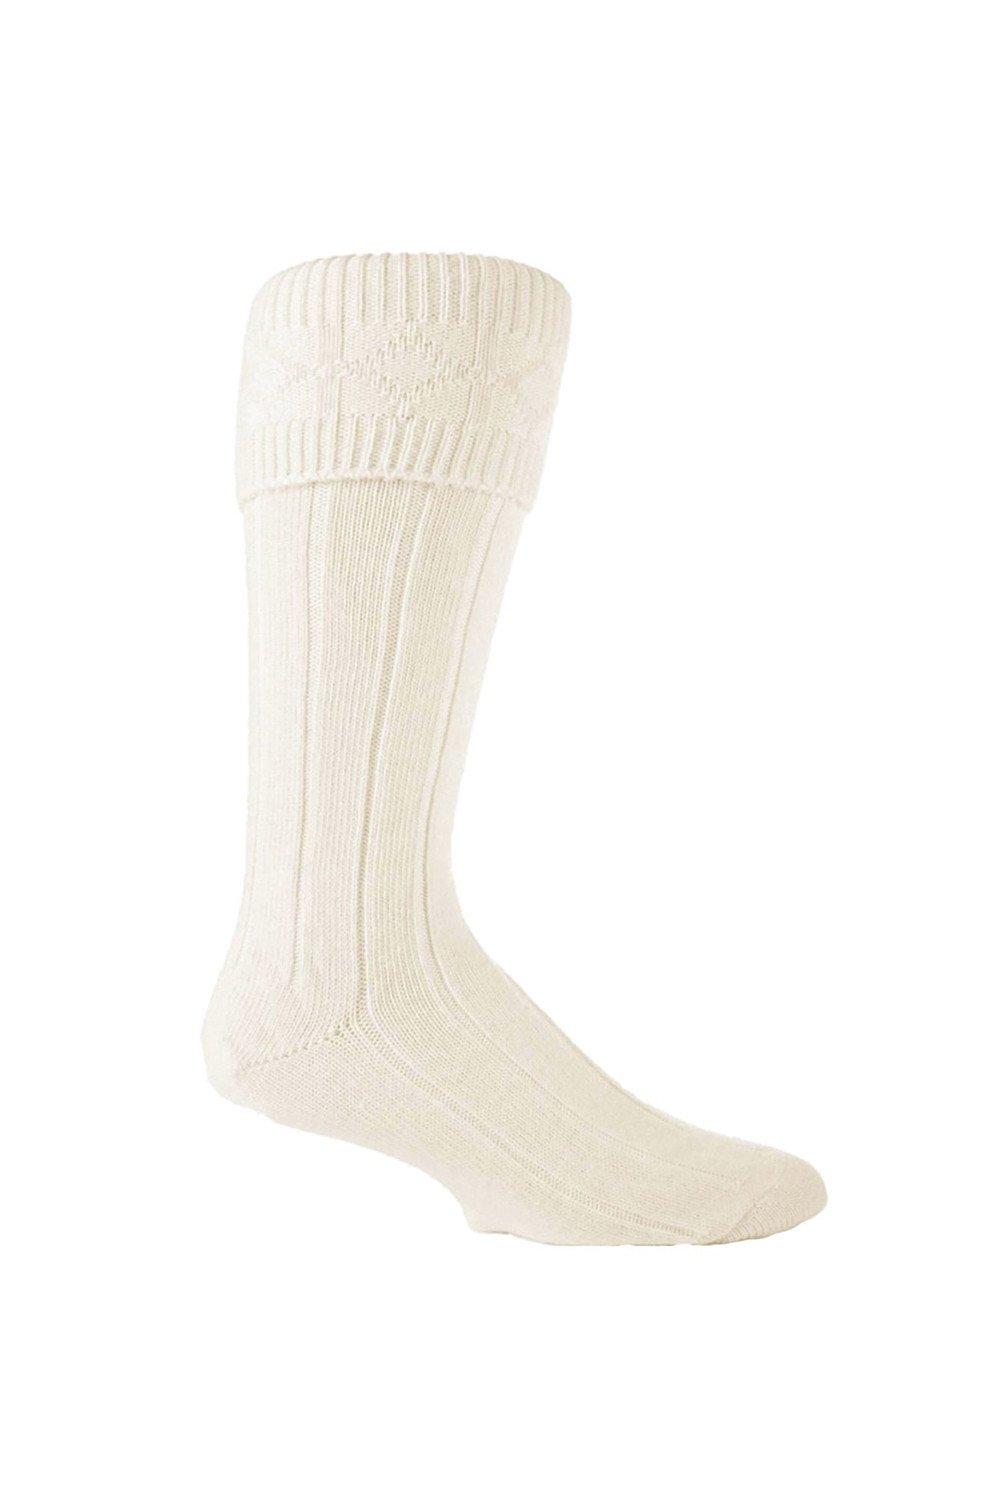 3 Pairs Knee High Warm Kilt Wool Socks